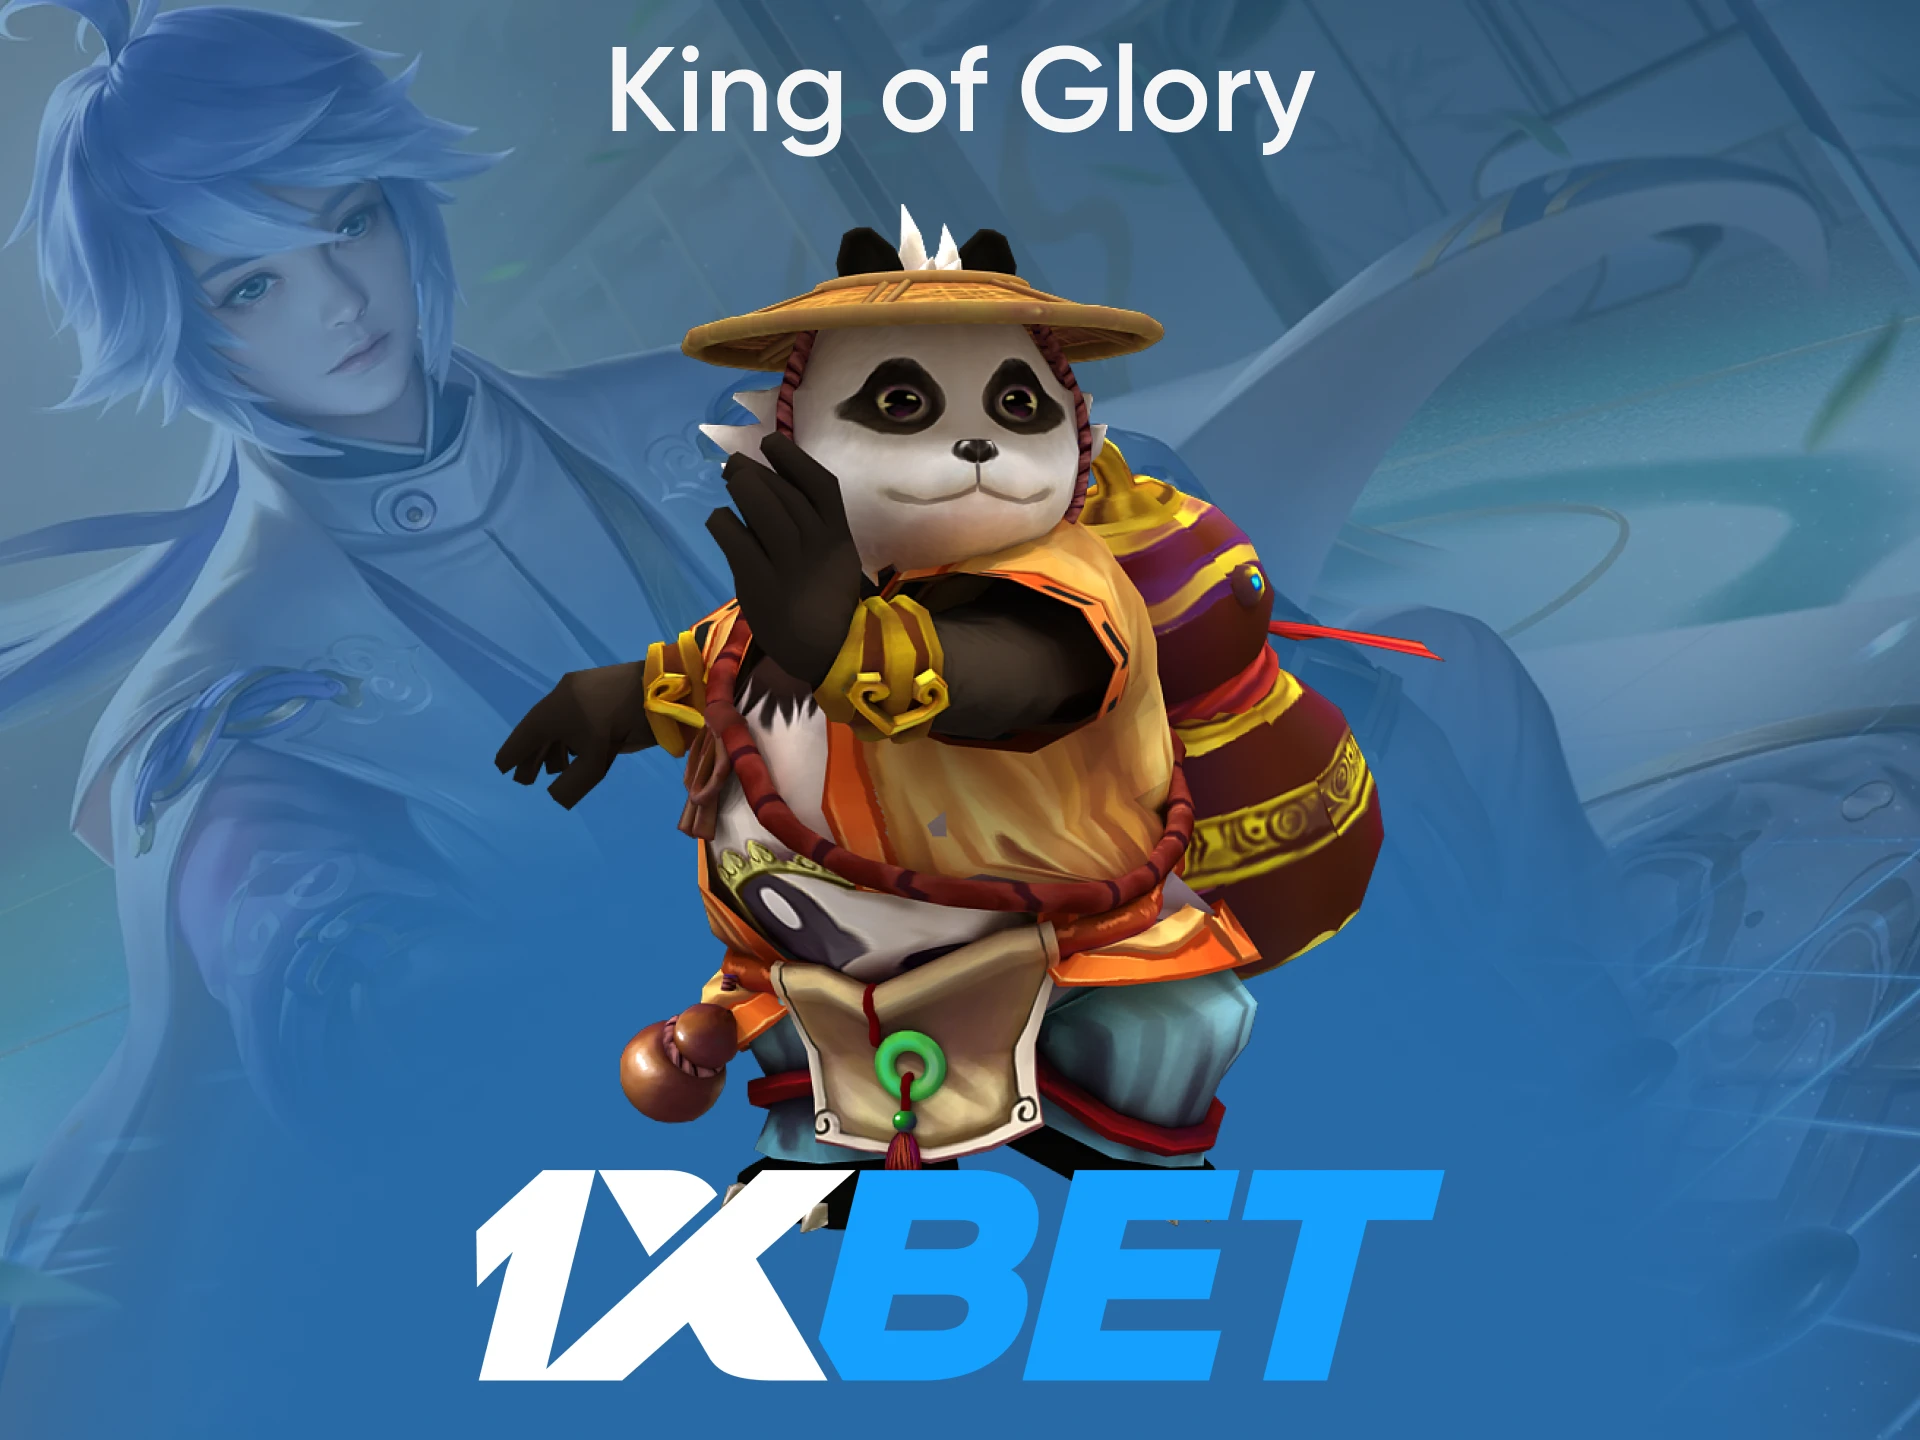 Para apostas em eSports da 1xbet, escolha King of Glory.